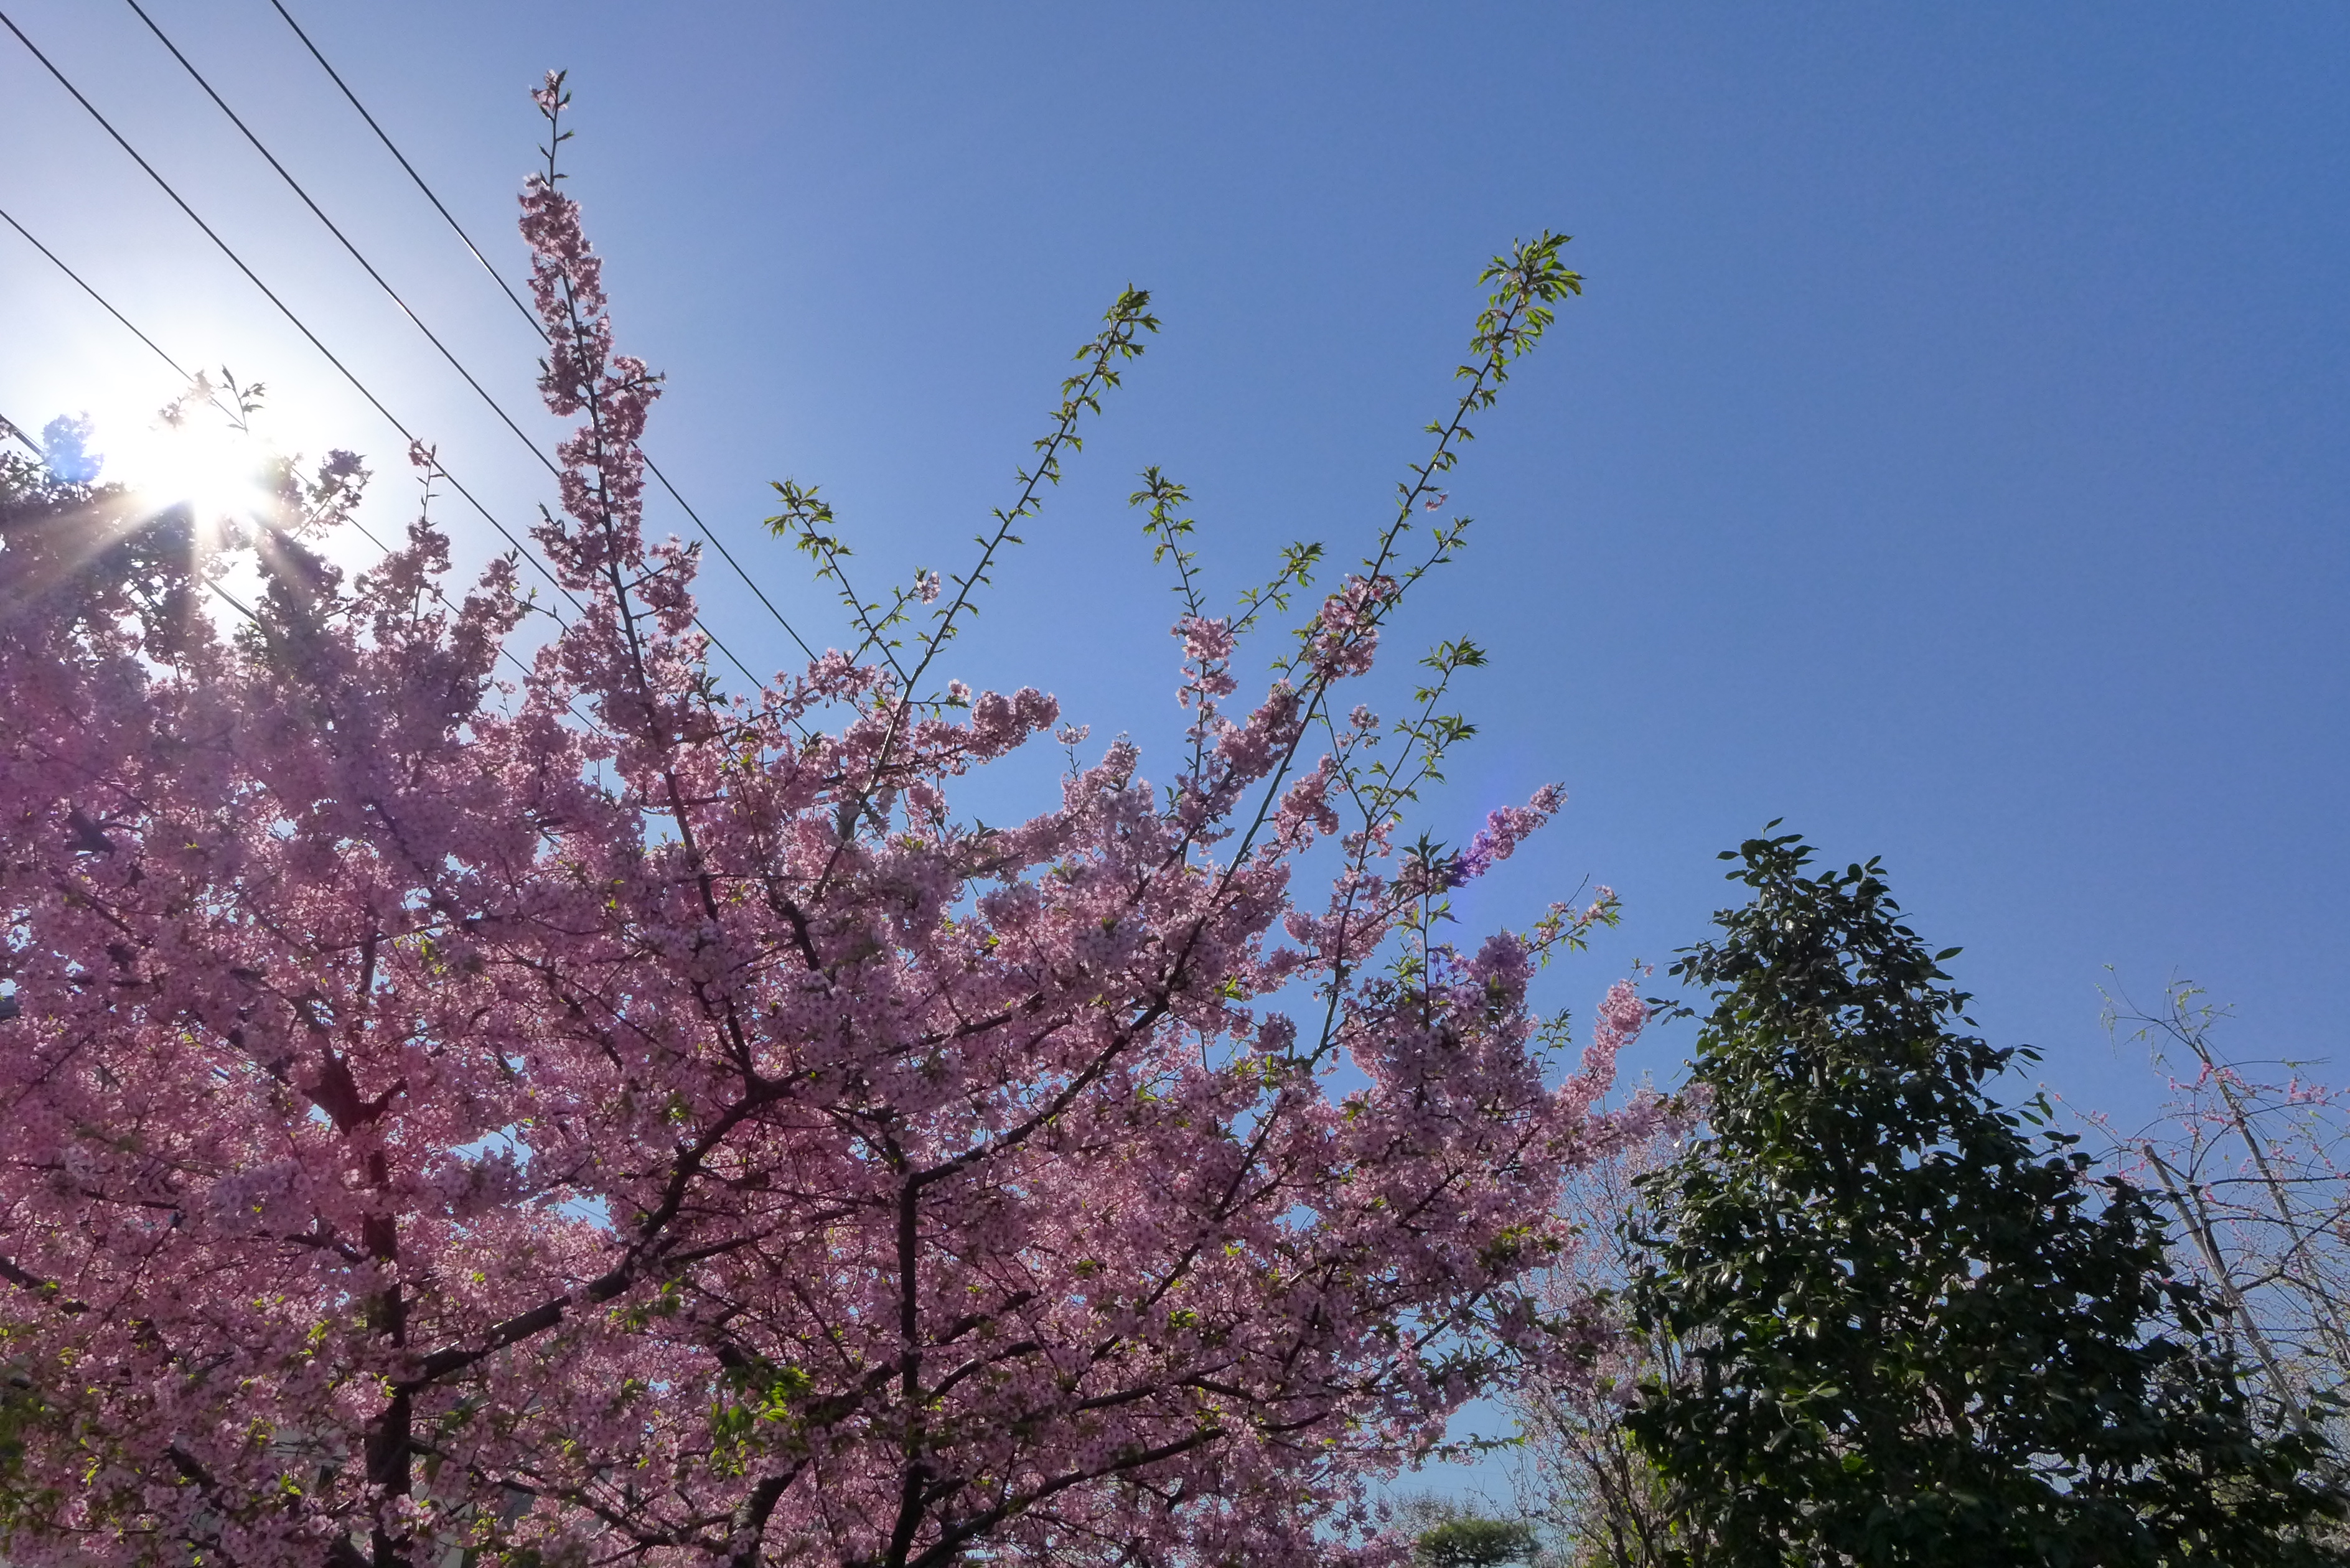 【HDR使用】桜の部分がふんわりと明るくなった